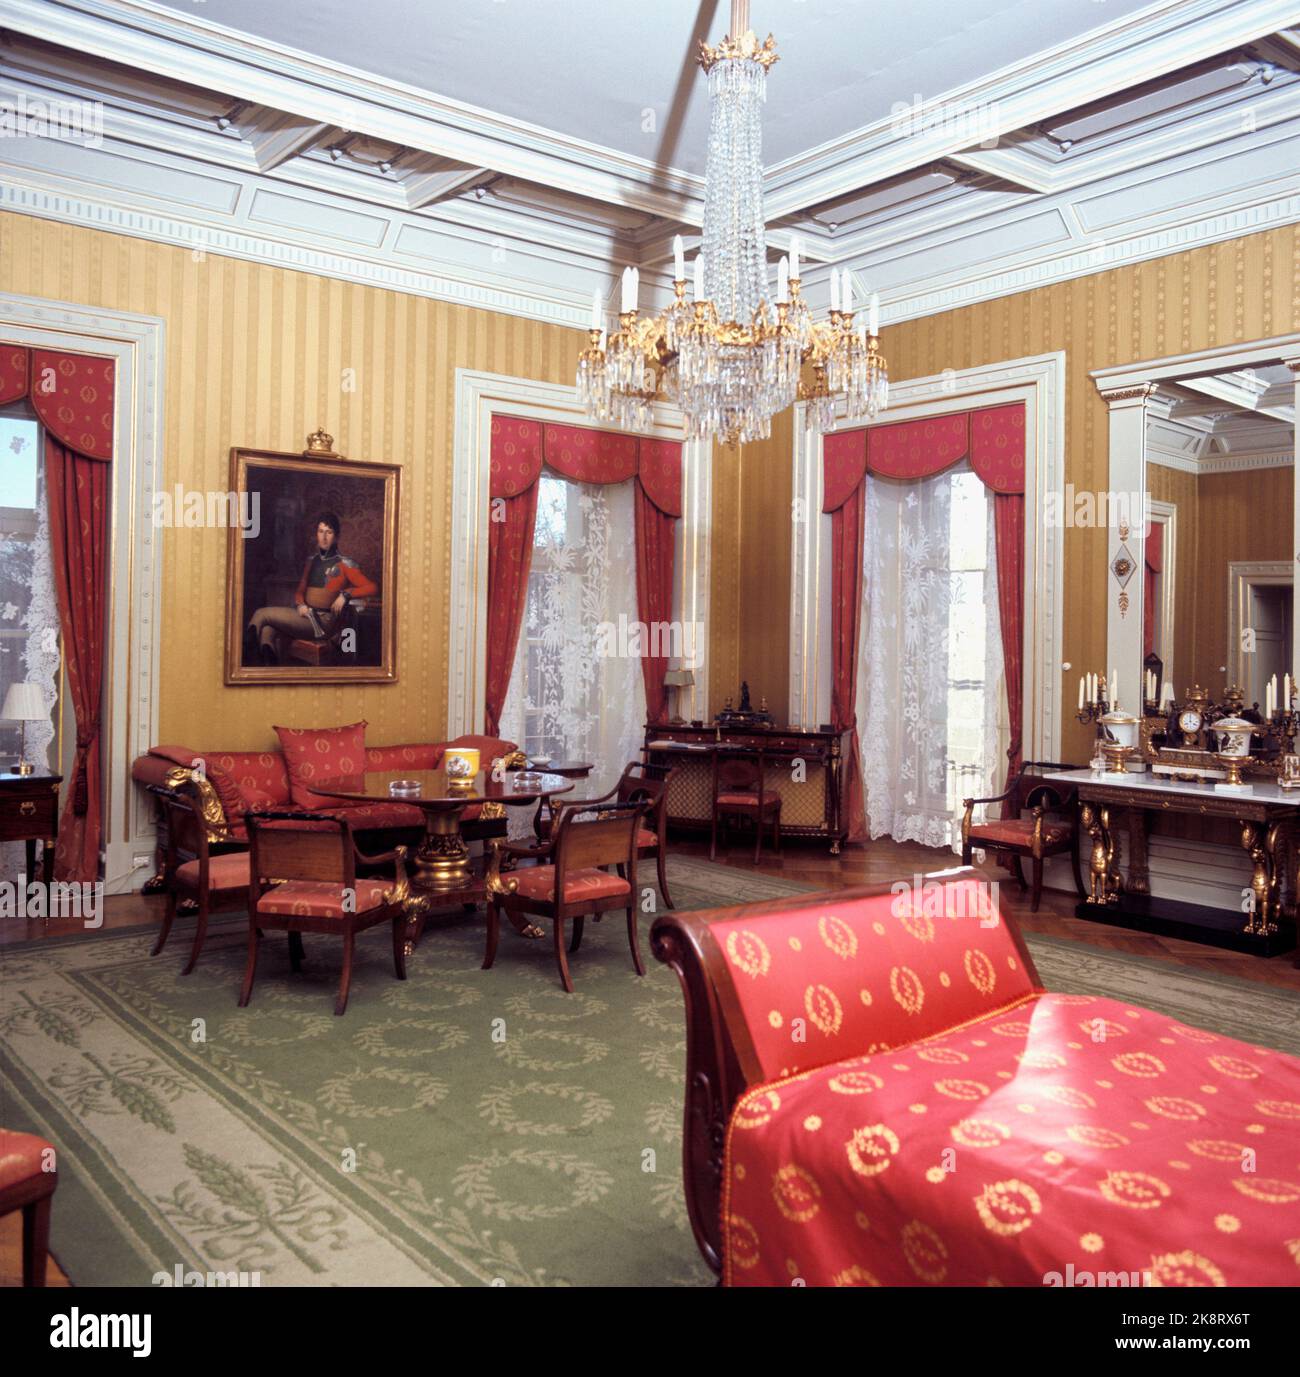 Oslo 1965: Interieur aus dem Yellow Guest Schlafzimmer / Apartment im königlichen Schloss. Preislampe / Kronleuchter in der Decke. Foto: Erik Thorberg NTB / NTB Stockfoto